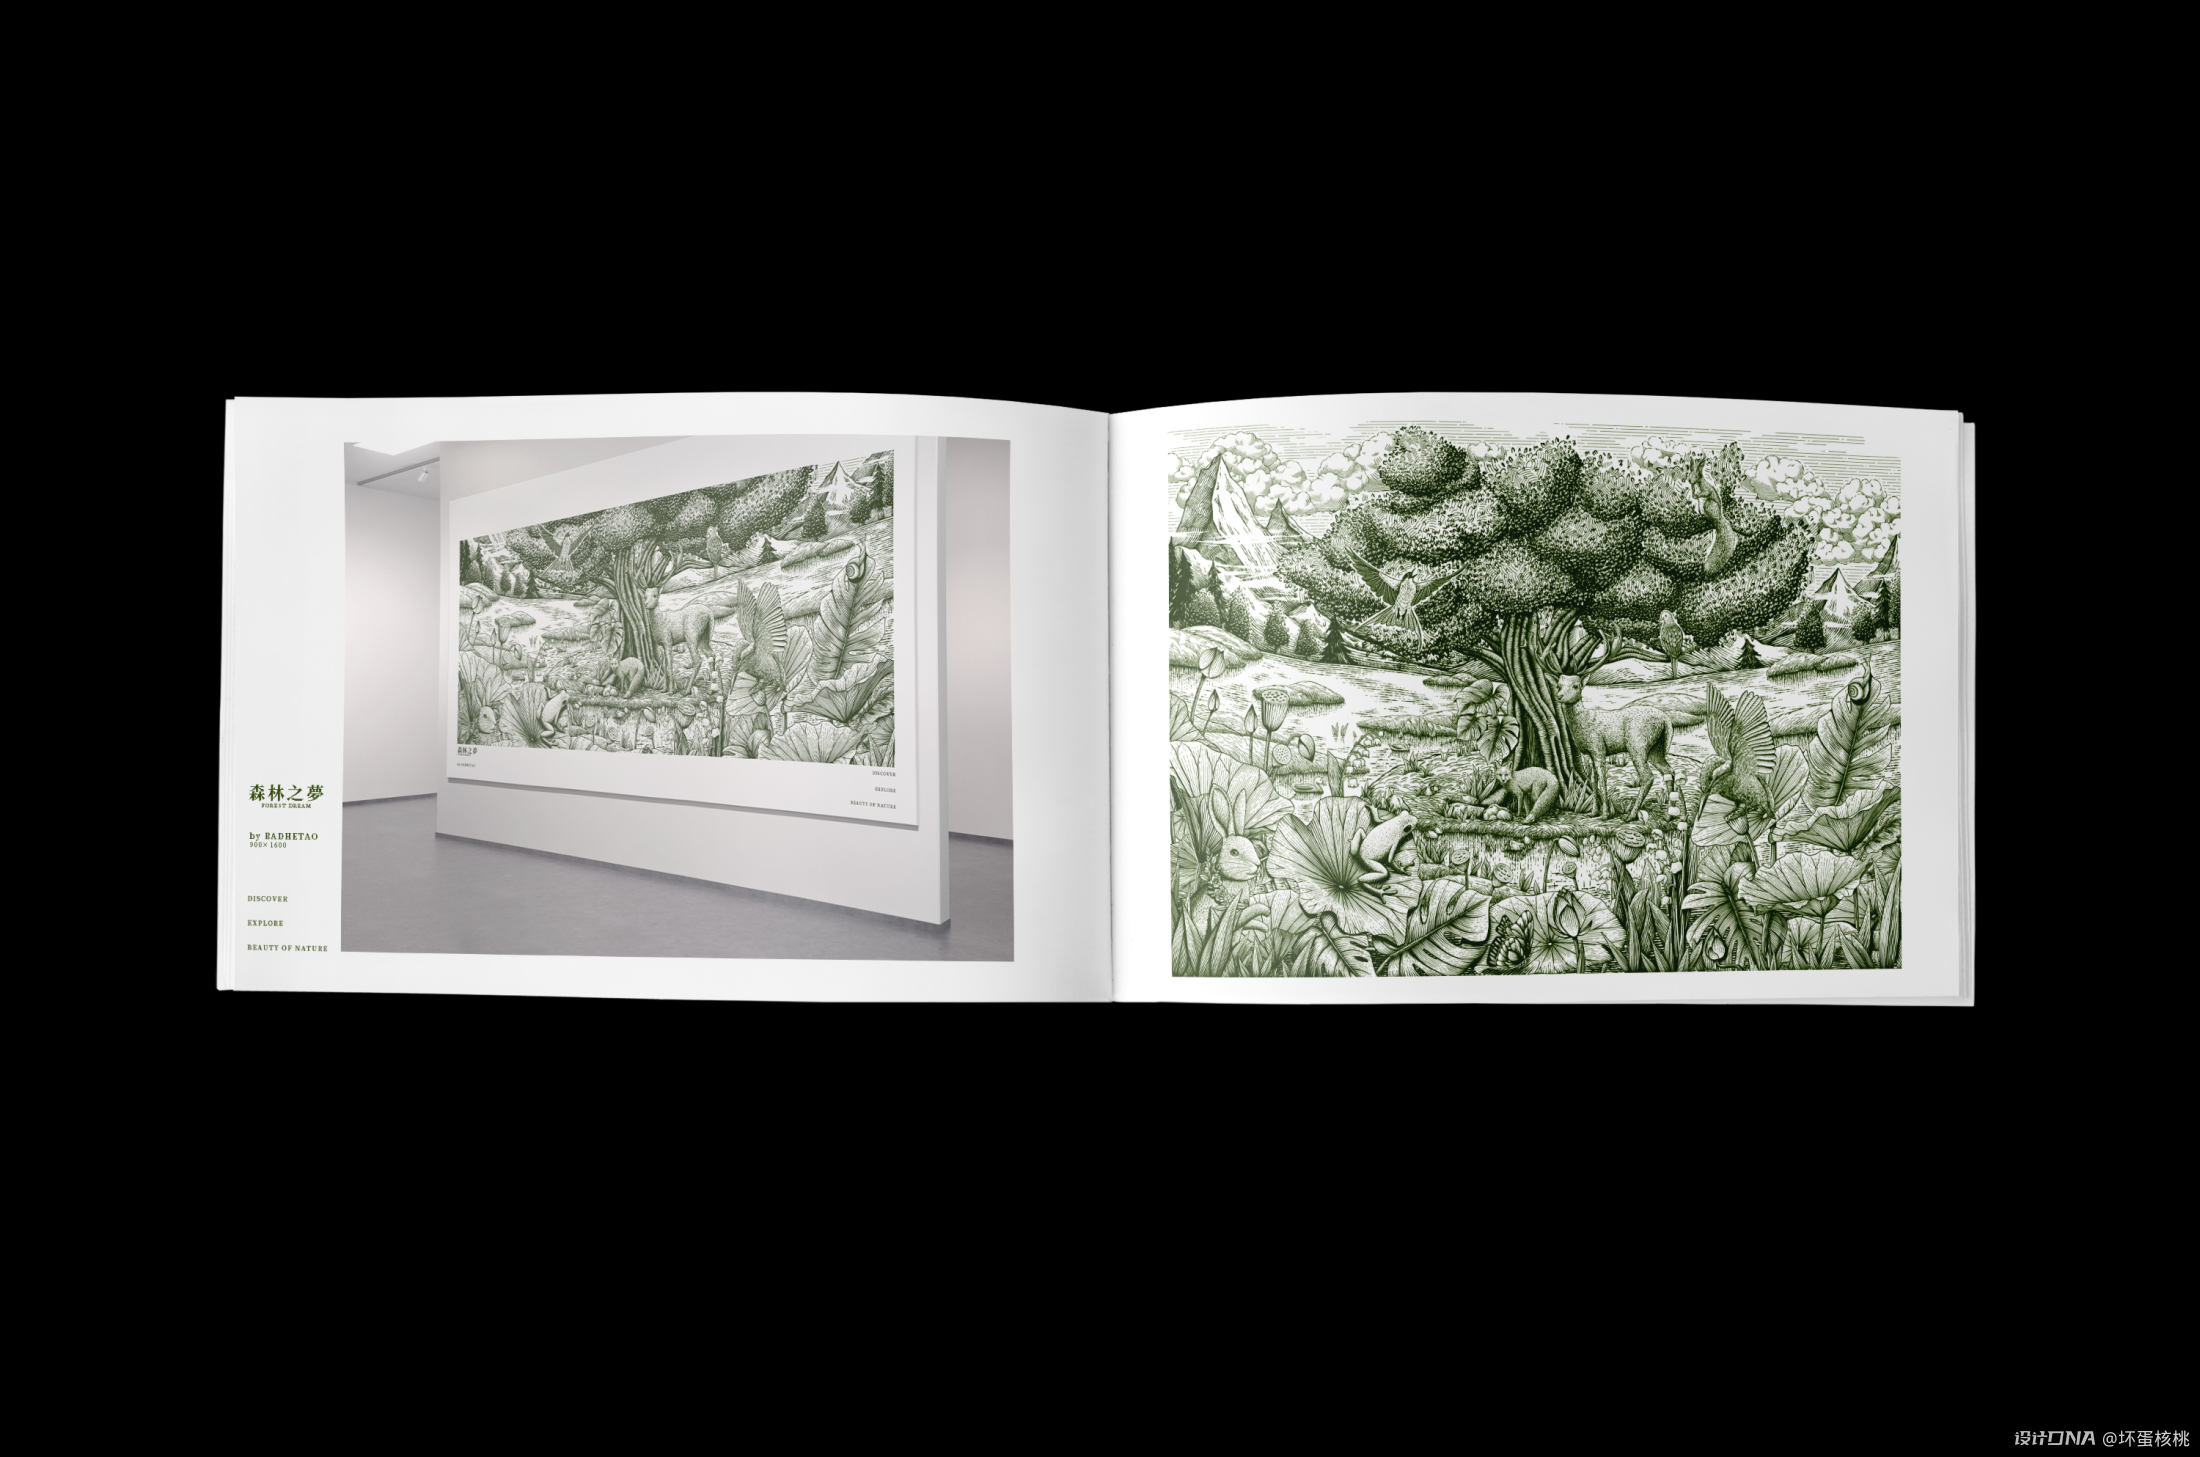 森林情景 自然生机|钢笔画风格包装插画 图13